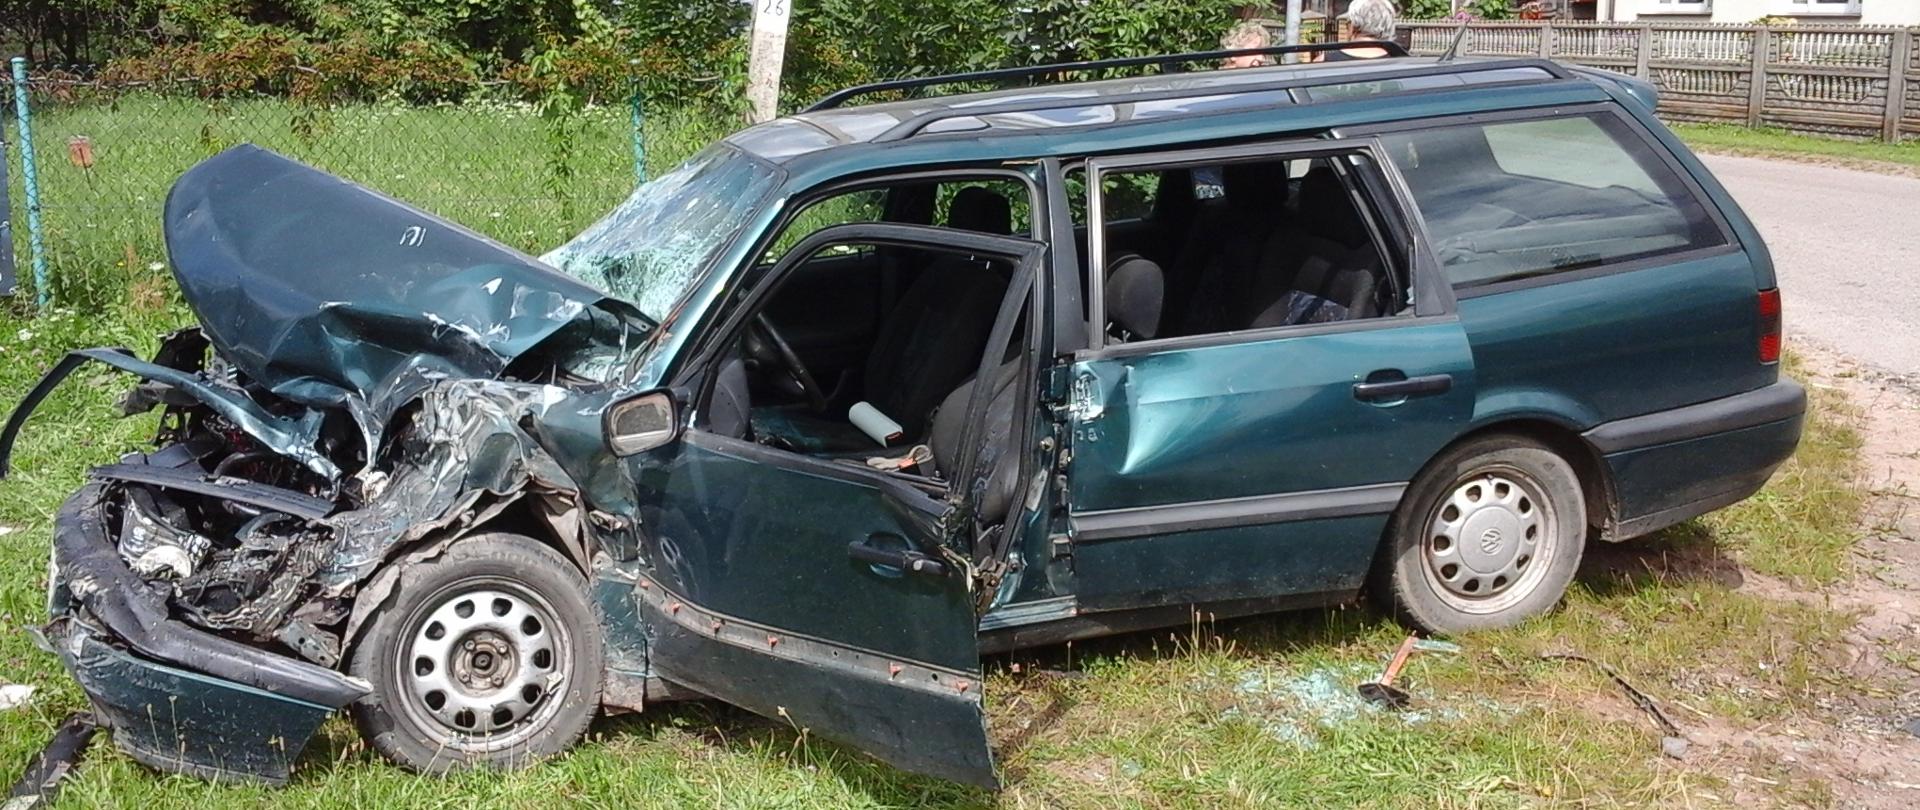 Zdjęcie przedstawia rozbity samochód osobowy koloru zielonego z uszkodzonym przodem 